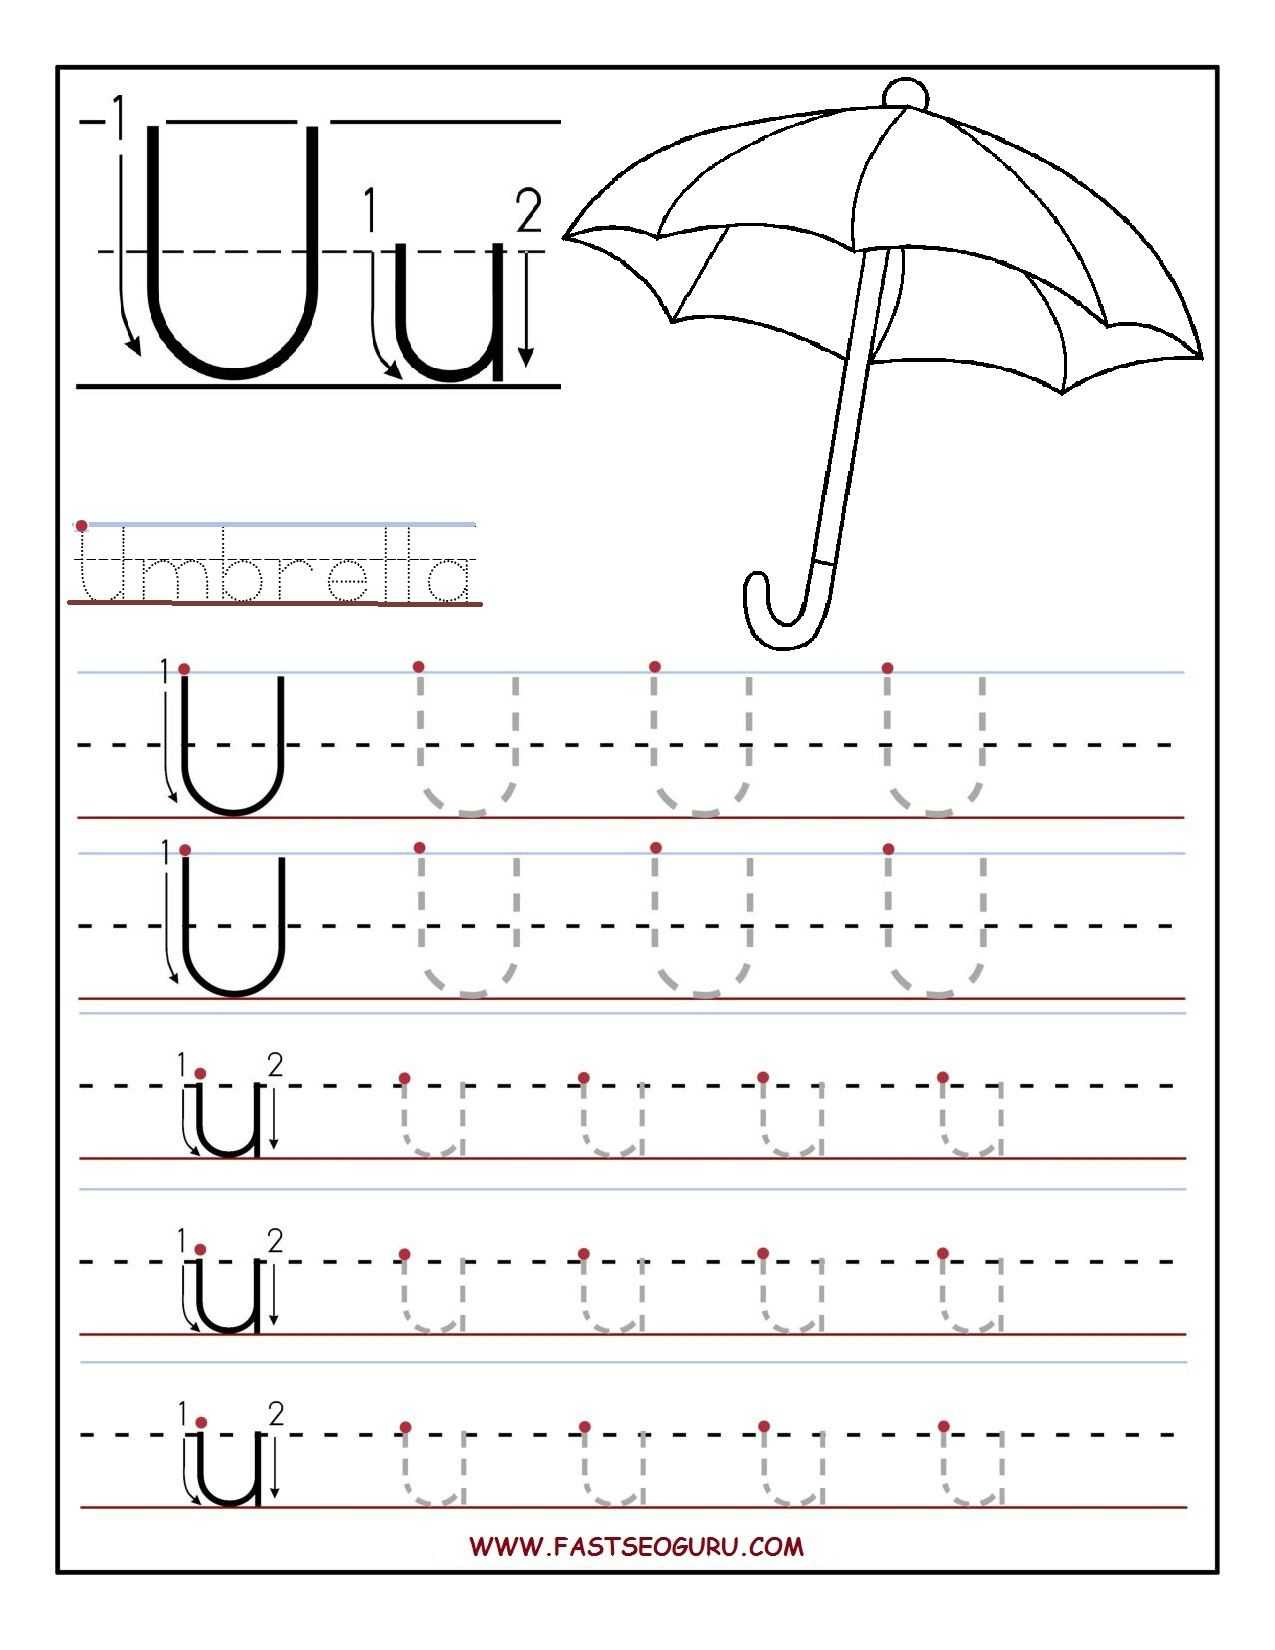 Spanish Alphabet Worksheets or Printable Letter U Tracing Worksheets for Preschool